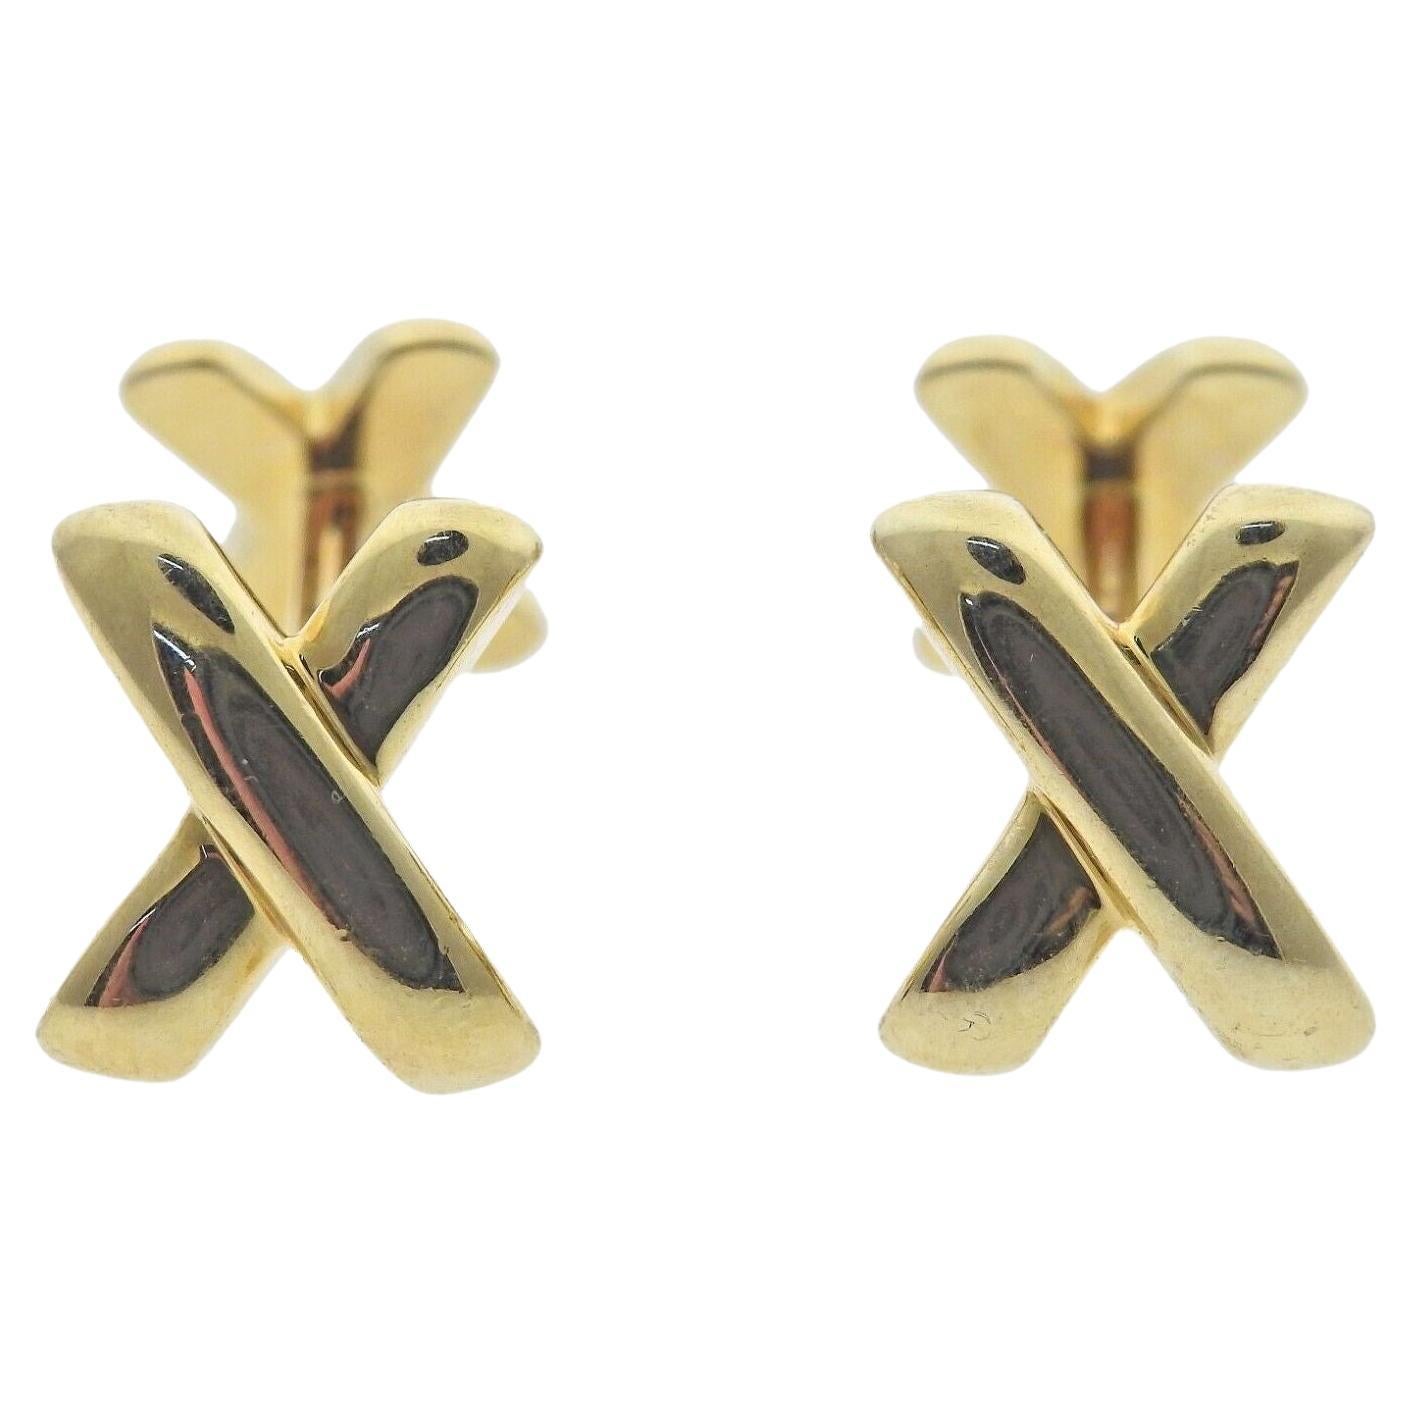 Tiffany & Co Gold X Cufflinks